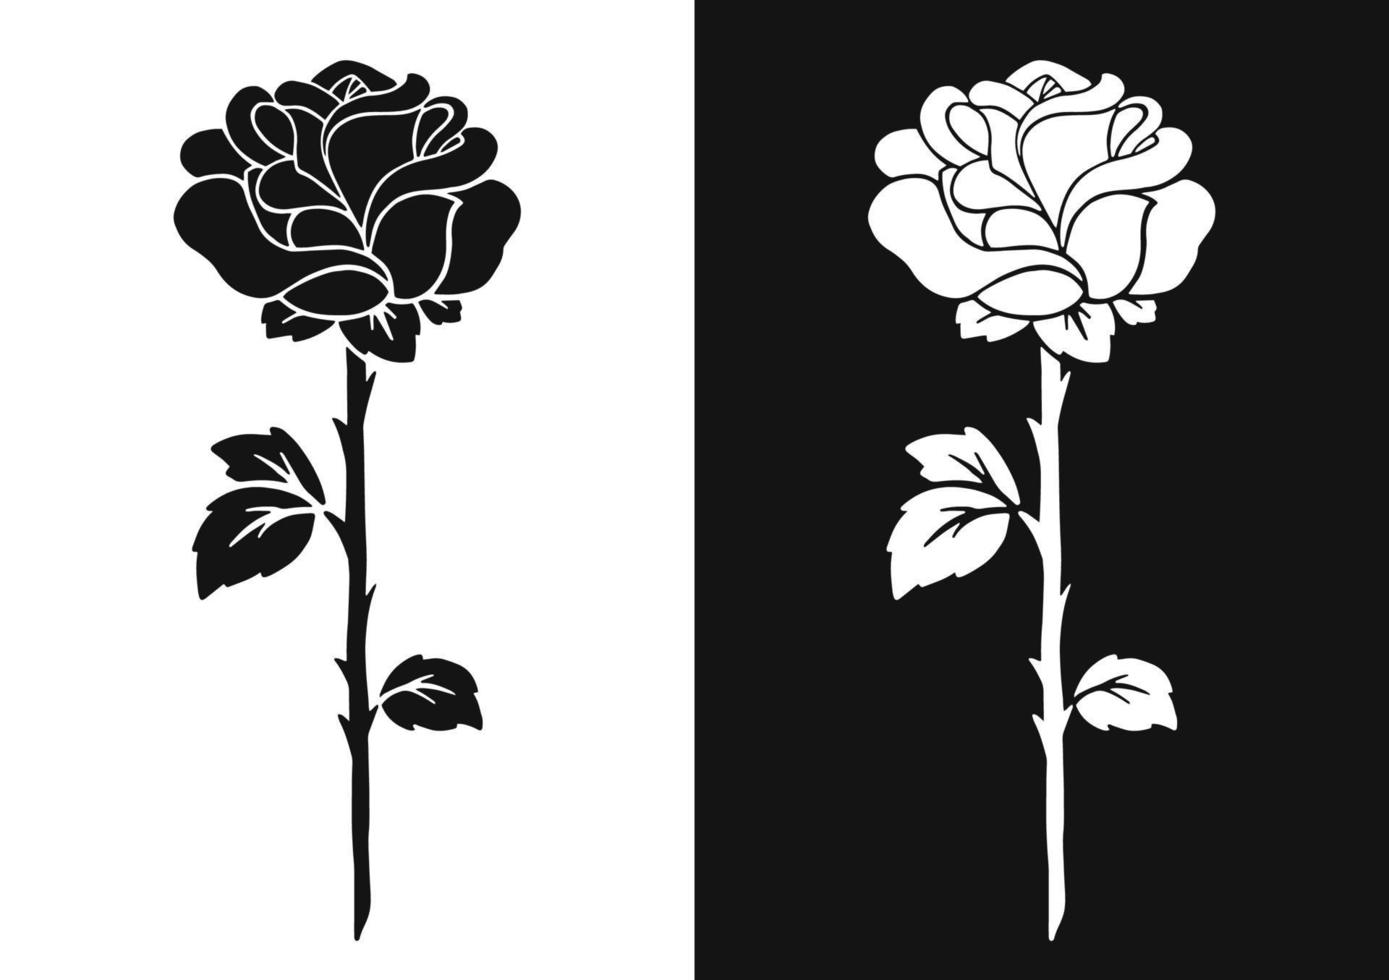 Flor rosa. silhueta negra. elemento de design. ilustração vetorial isolada no fundo branco. modelo para livros, adesivos, cartazes, cartões, roupas. vetor